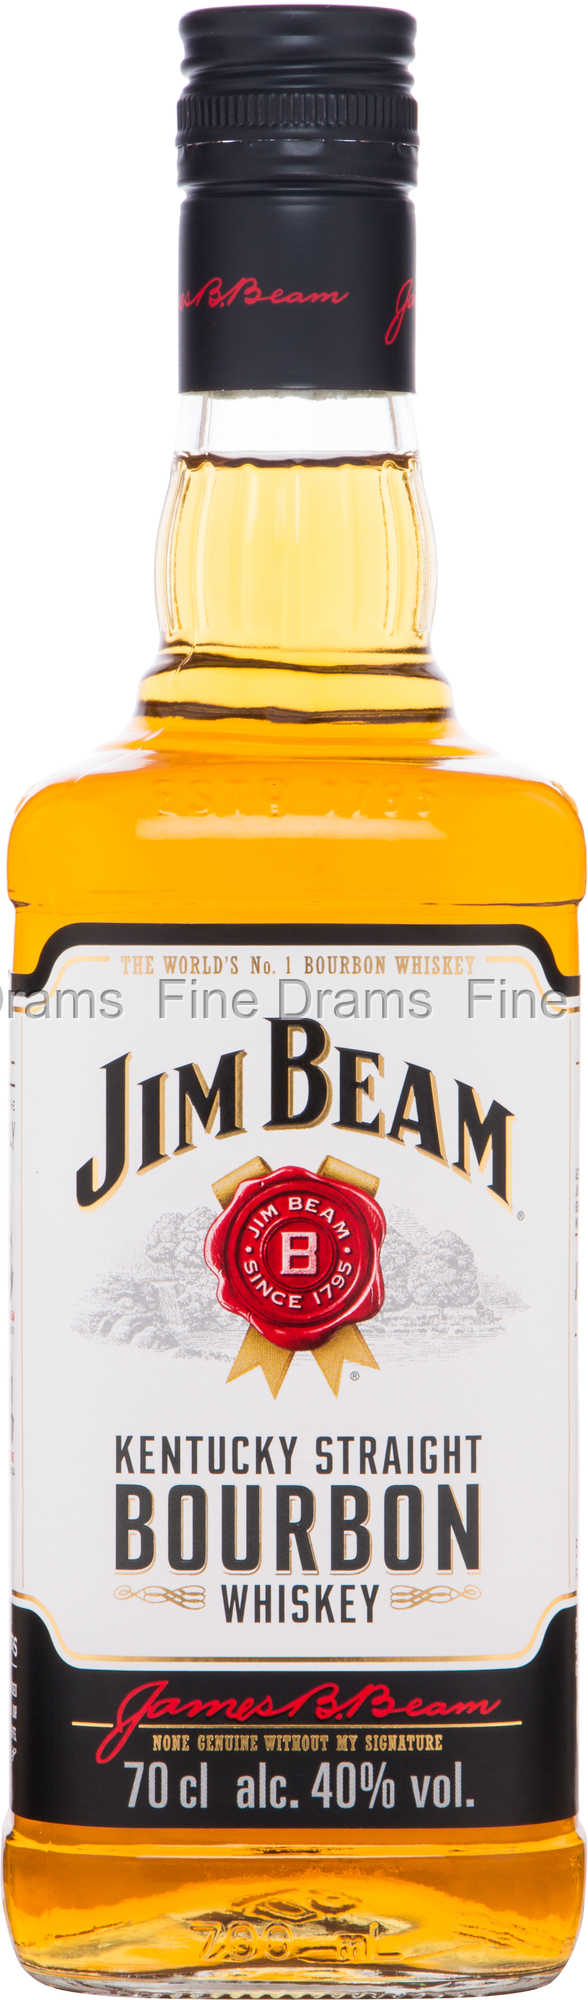 Jim Beam White Whisky Label